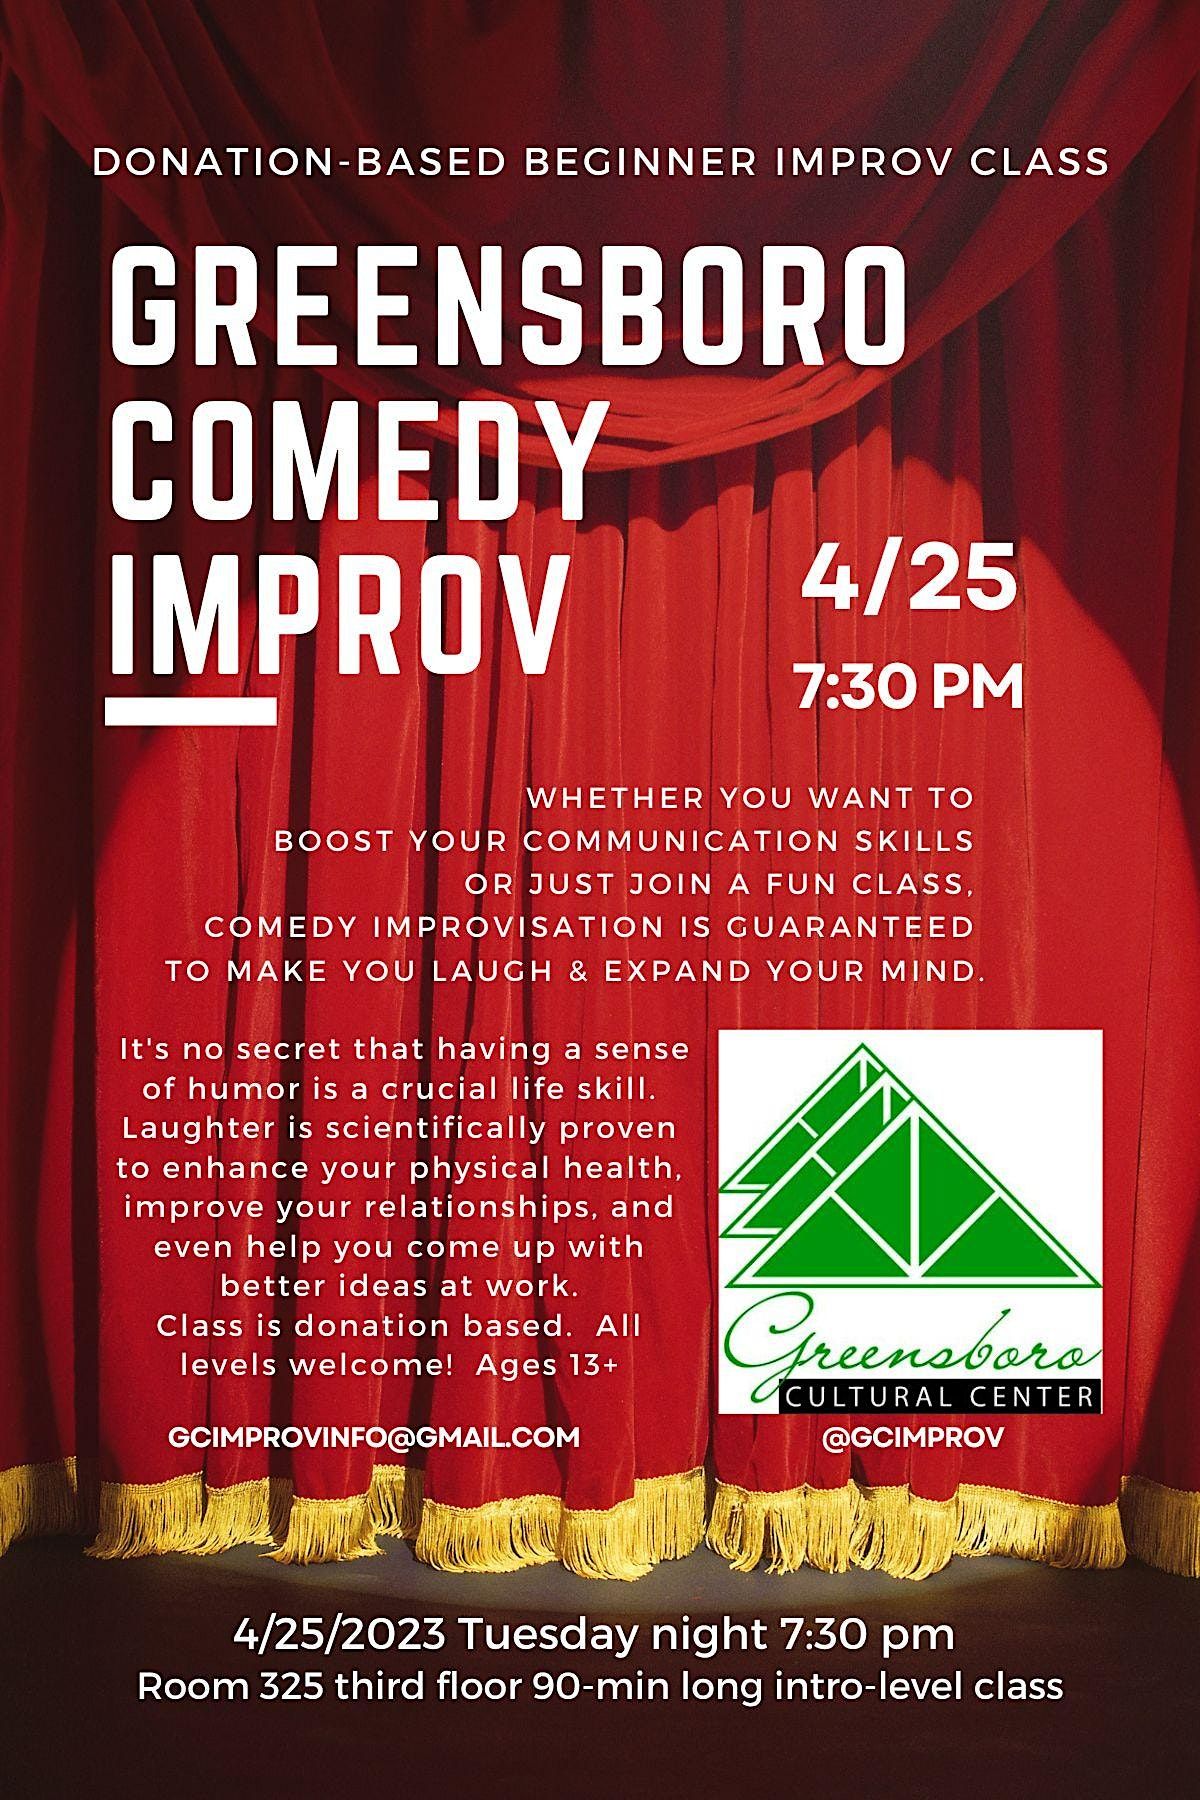 Greensboro Comedy Improv Class Greensboro Cultural Center April 25